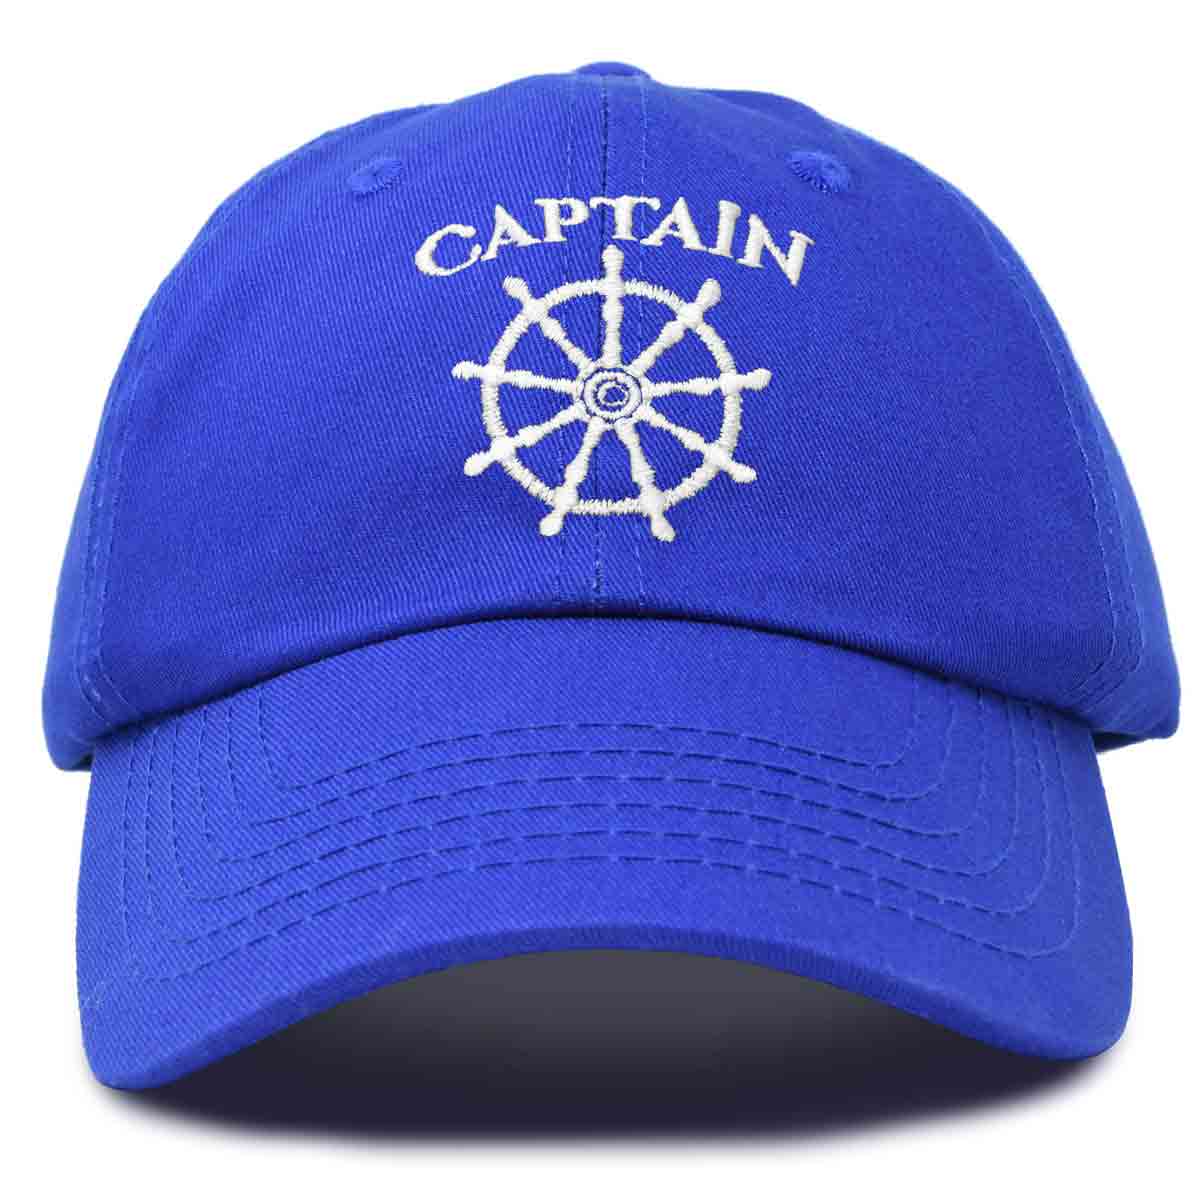 Dalix Captain Hat